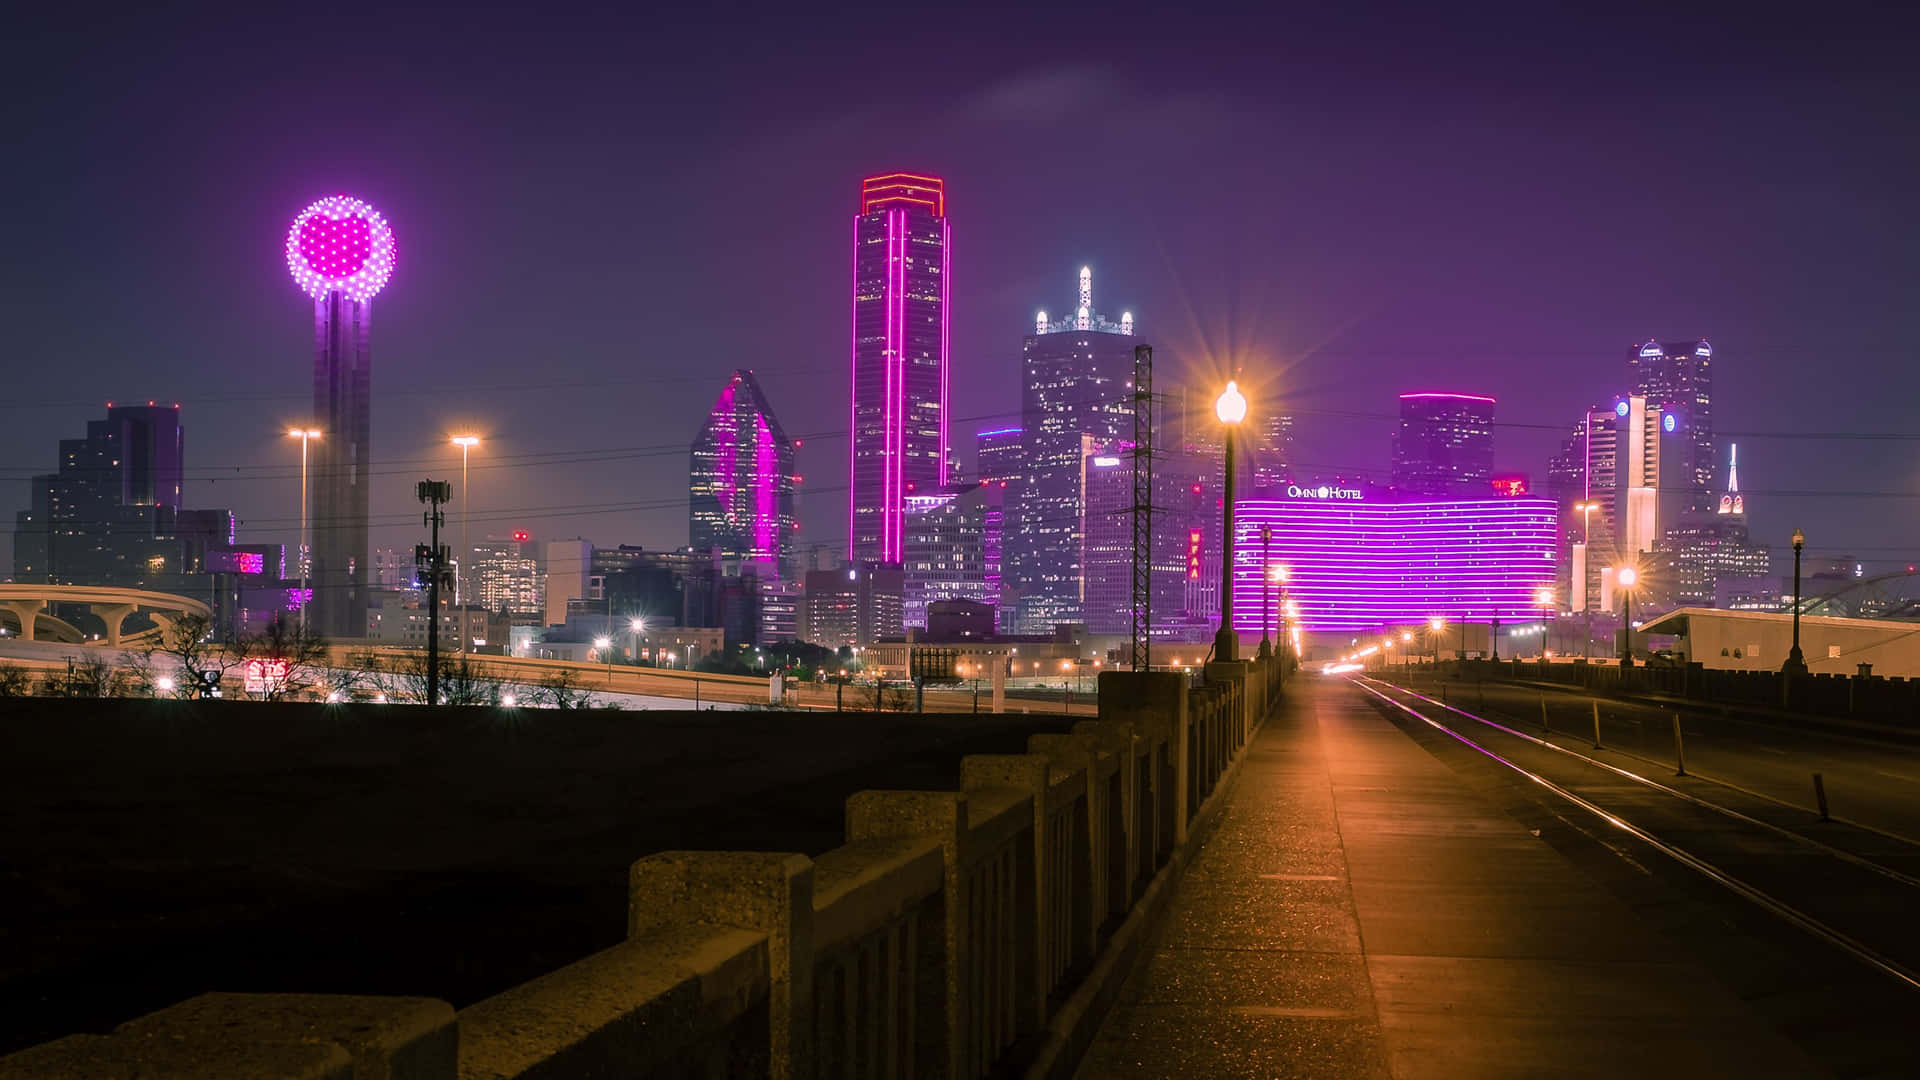 Fondodel Purple Reunion Tower En El Condado De Dallas.